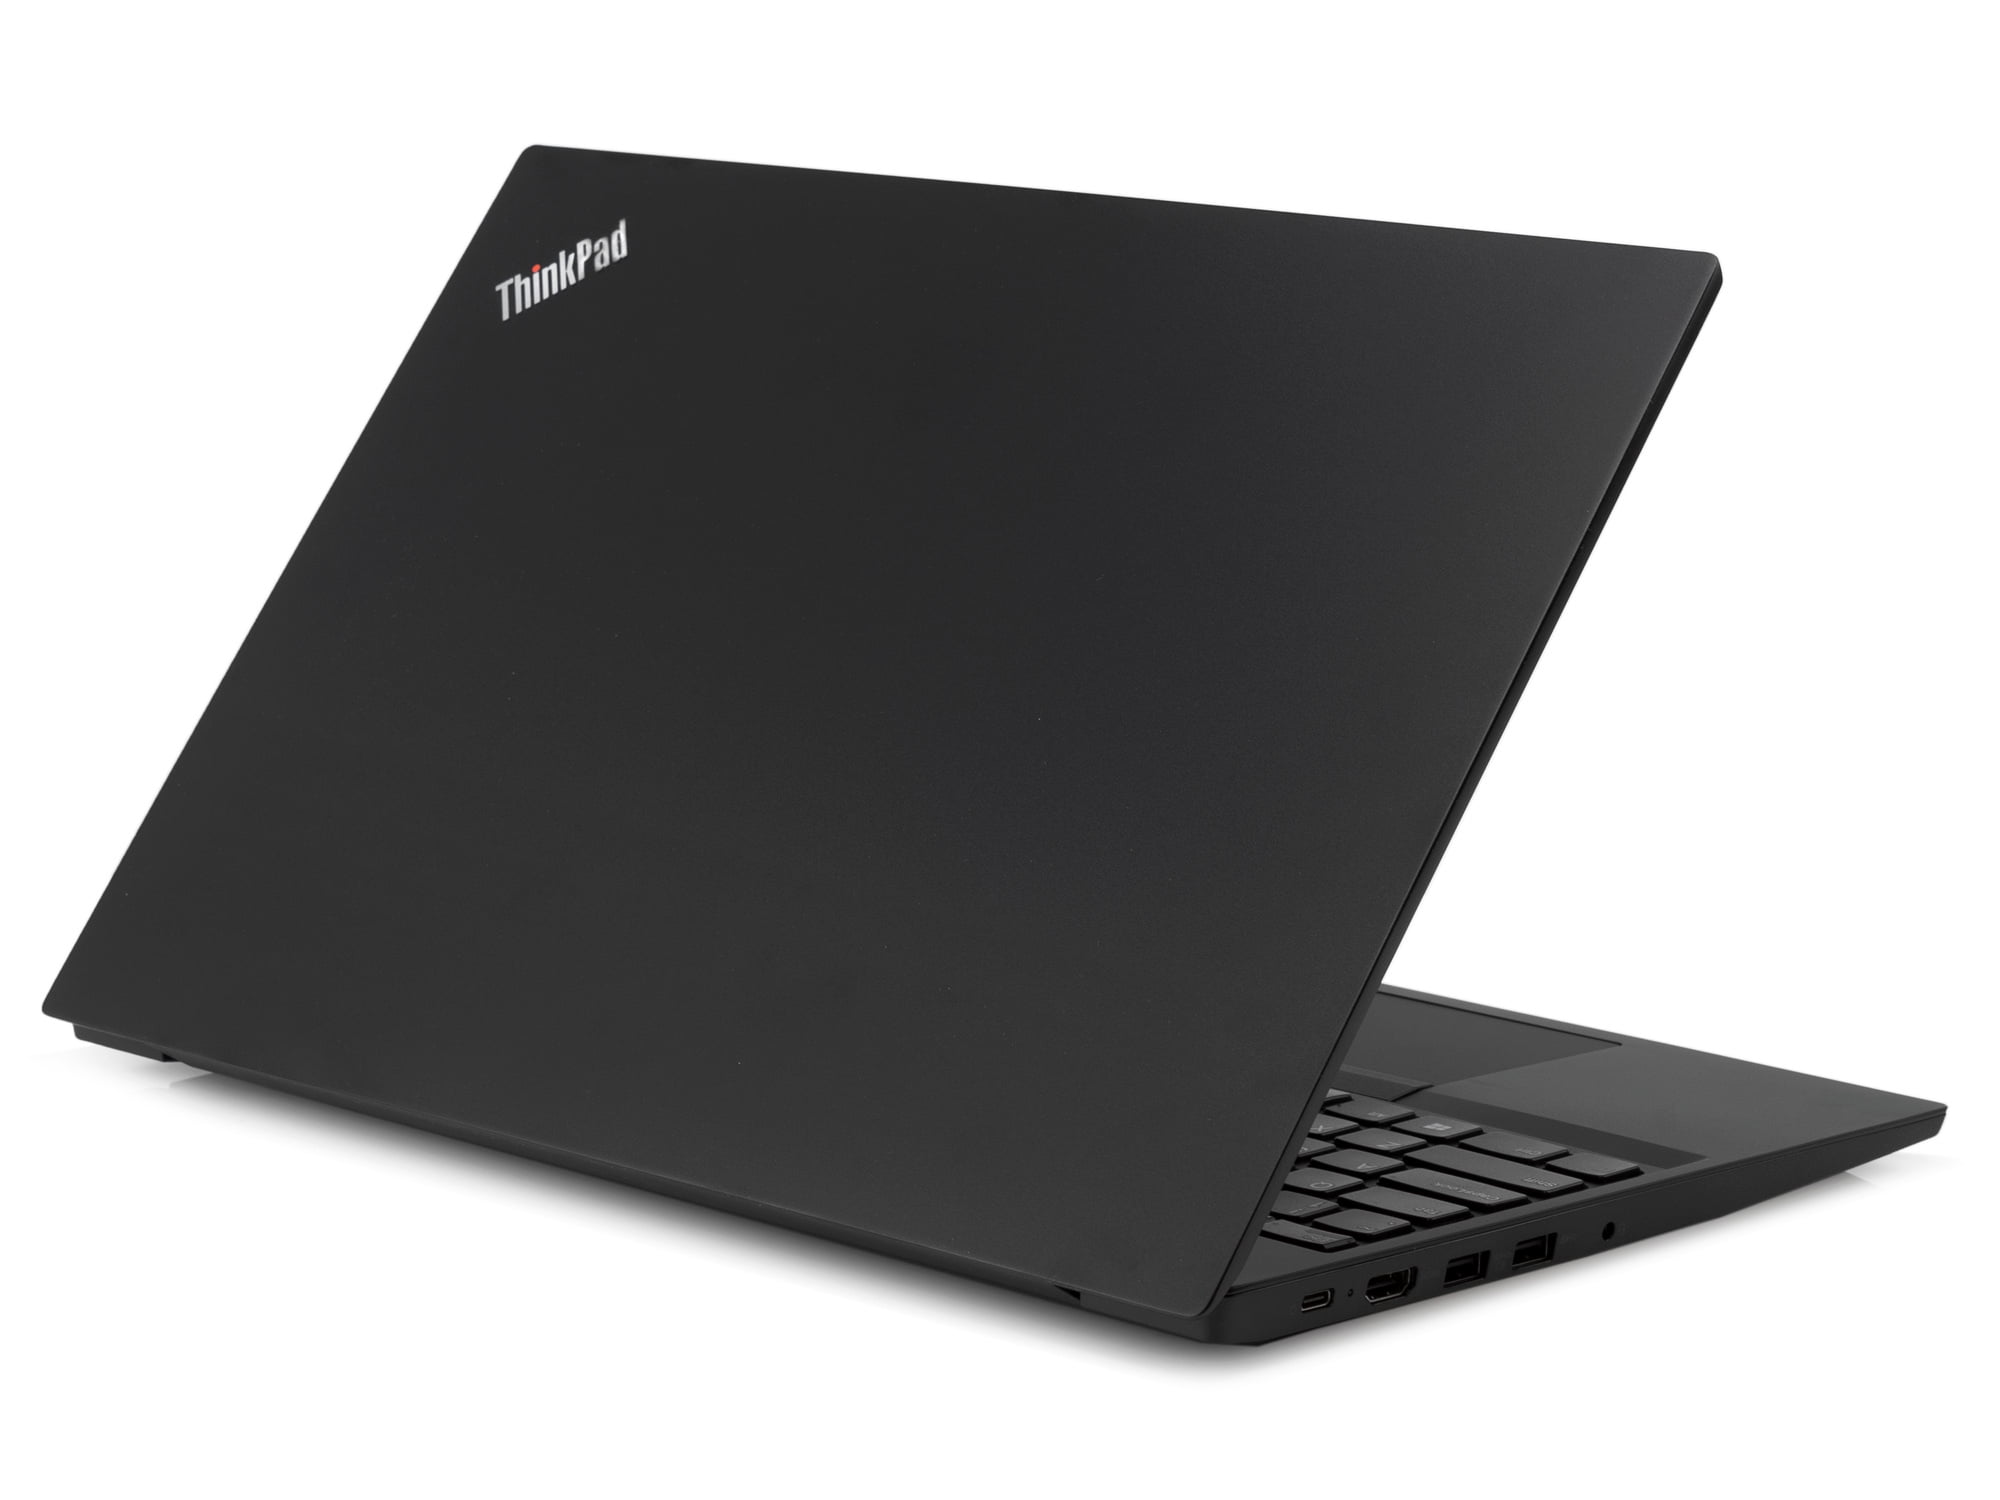 Lenovo ThinkPad E480 Gaming Notebook, 14